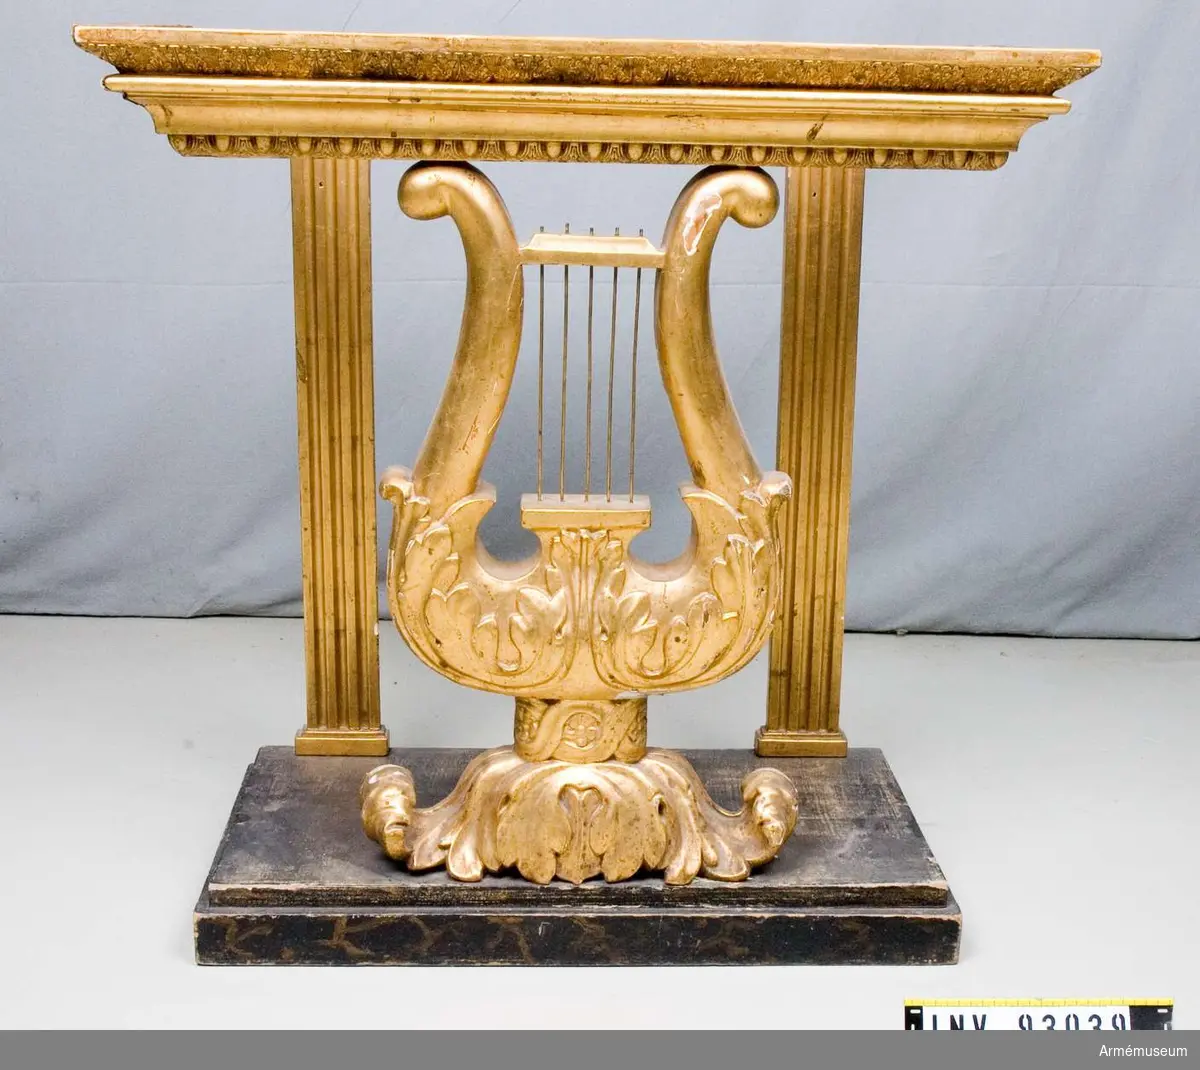 Förgyllt bord i form av ett musikinstrument med bordskiva av marmor. Ska stå under en spegel.